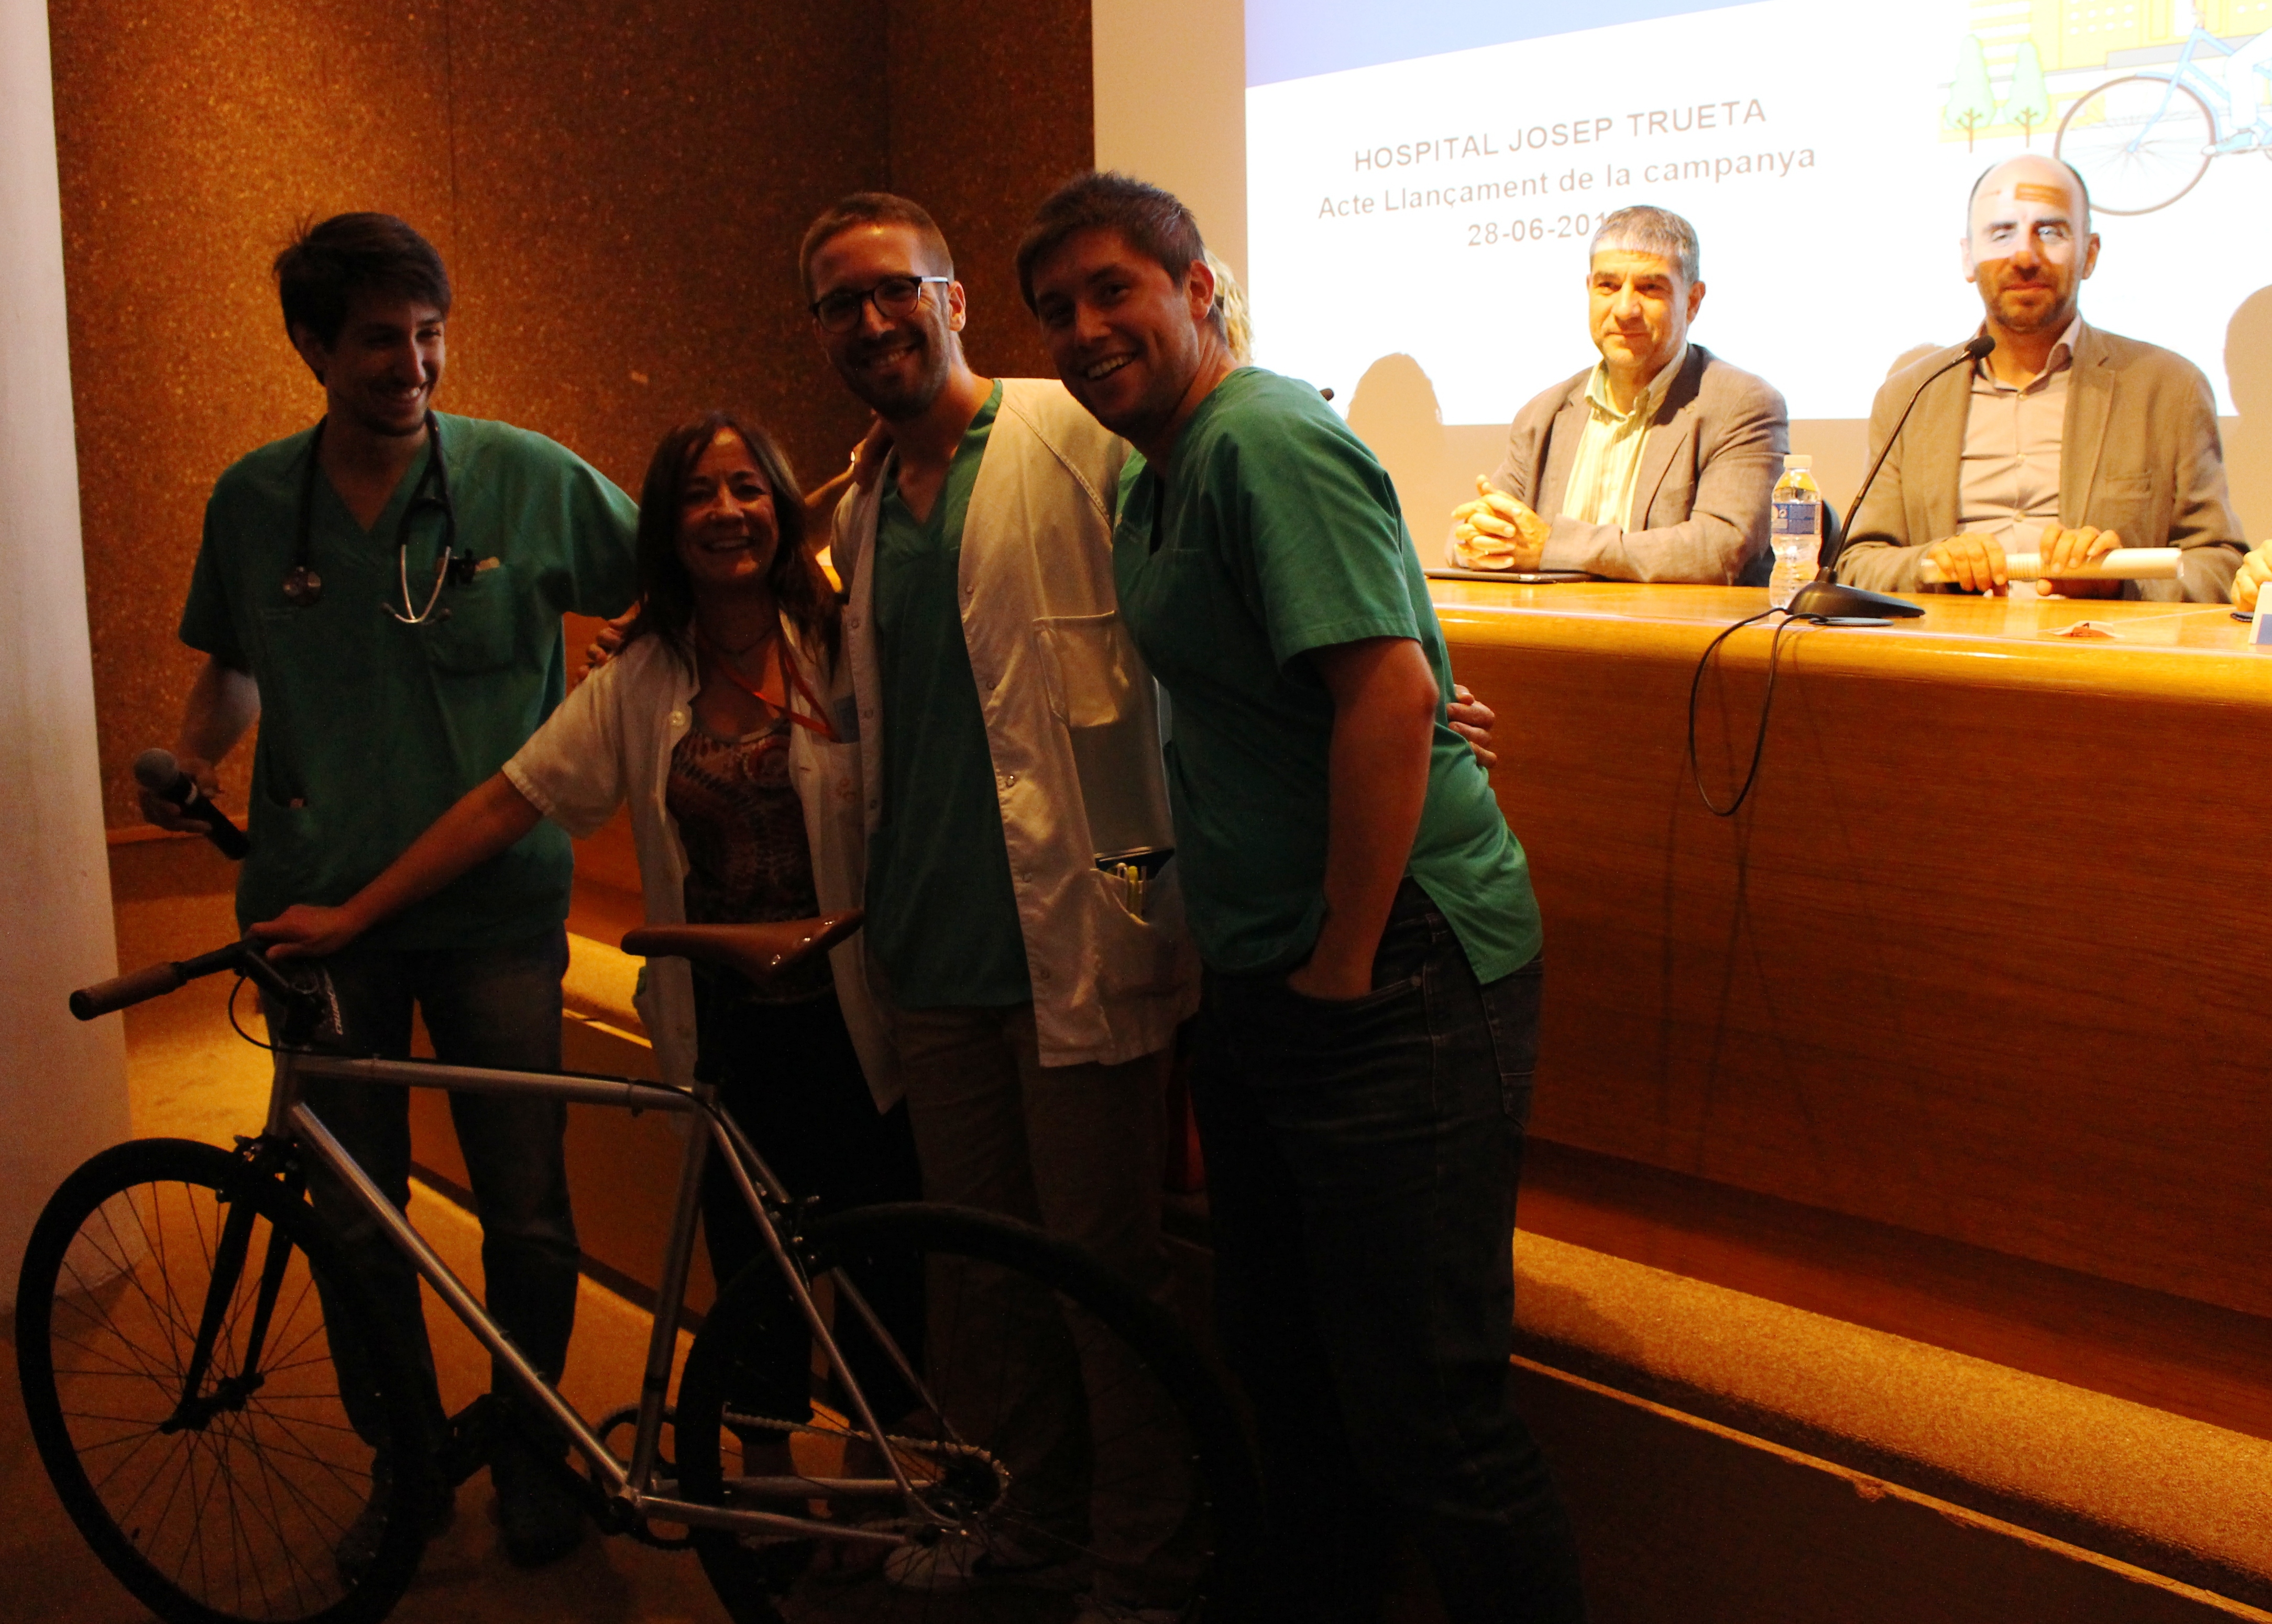 Foto de professionals del Servei de Cardiologia amb la bicicleta que han sortejat als assistents de la presentació de la campanya #ElTruetaPedala